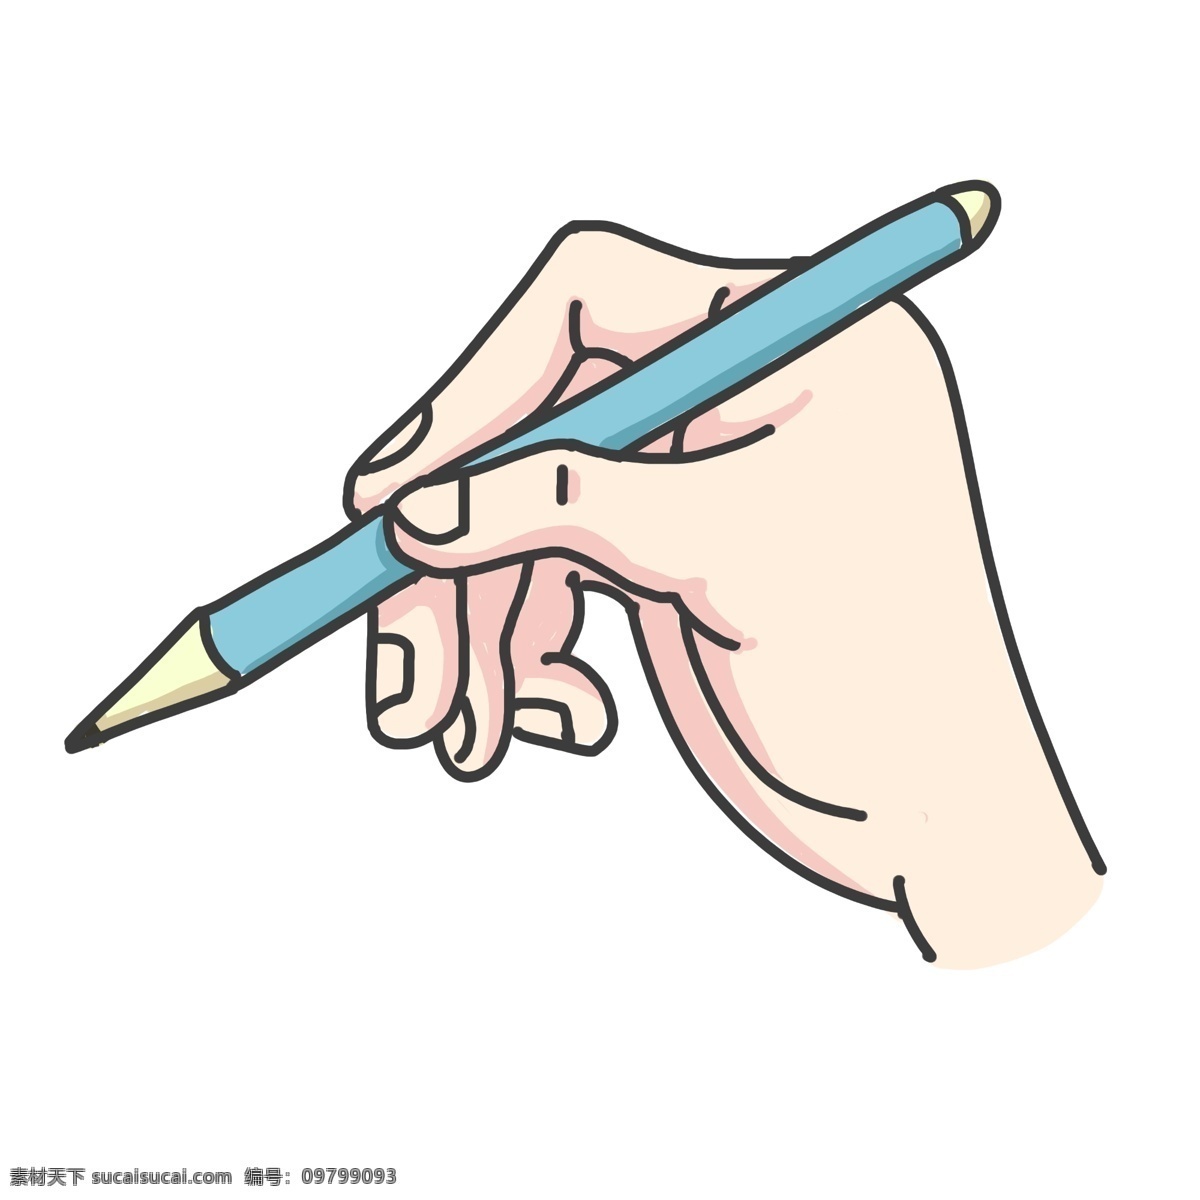 写字 笔 手势 插画 拿笔的手势 卡通插画 手势插画 手指插画 手掌插画 比划手势 写字的手势